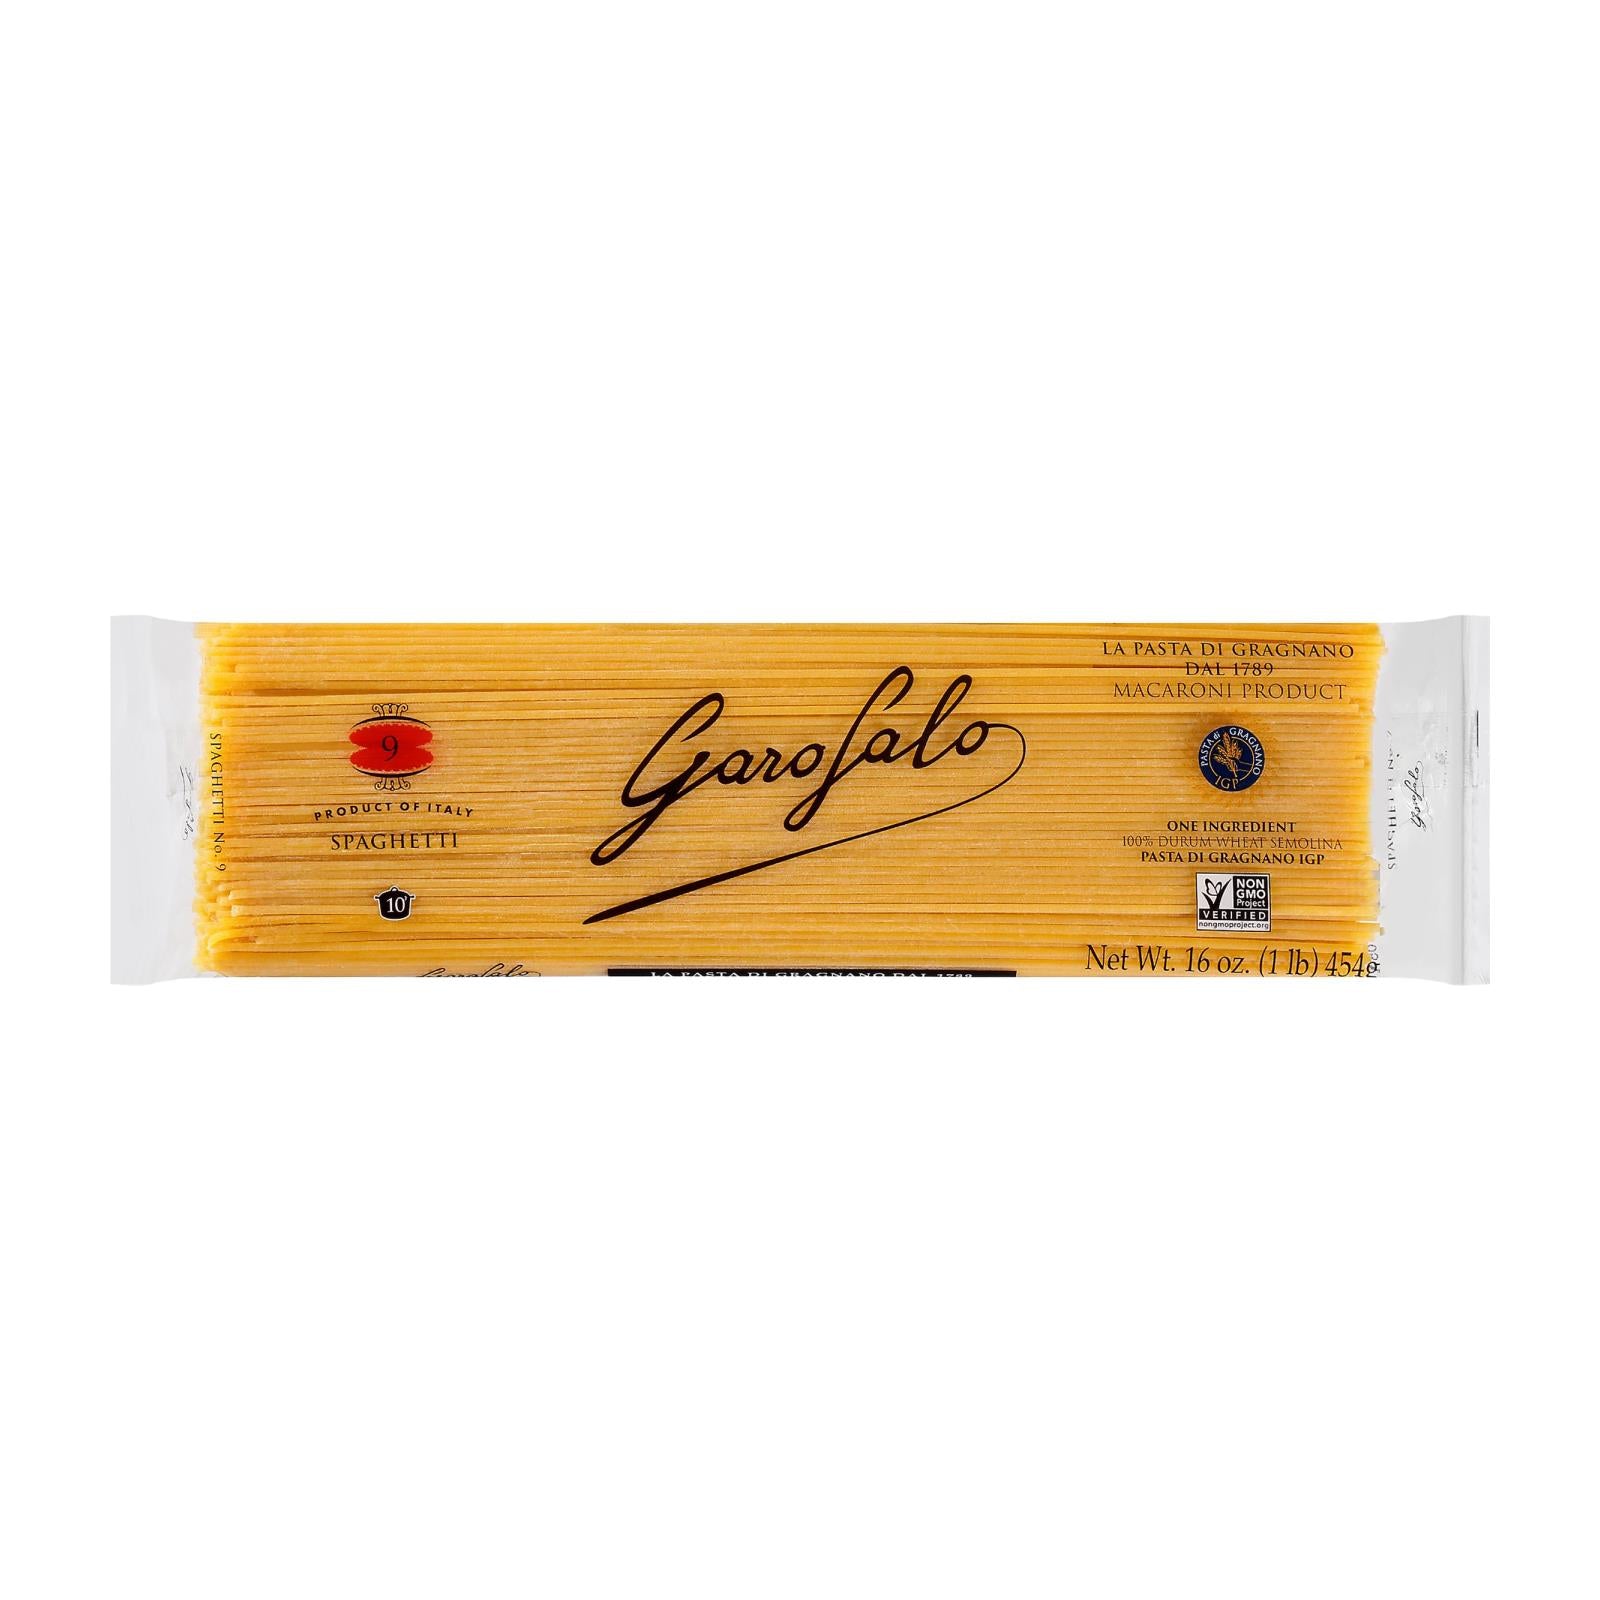 Garofalo Pasta - Spaghetti - Case Of 20 - 16 Oz